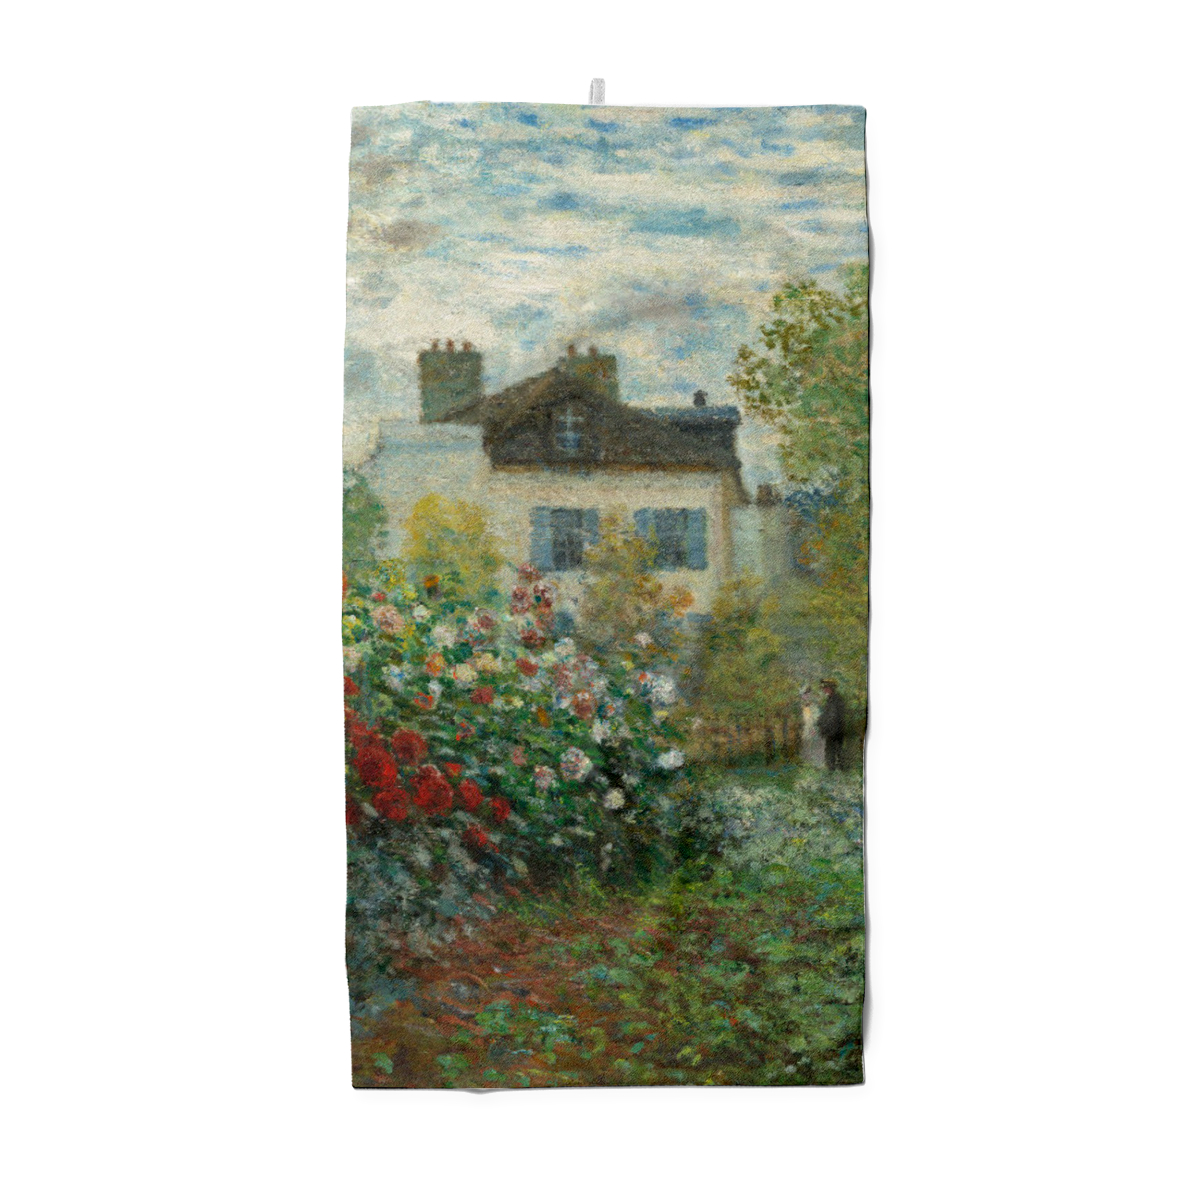 Badetuch Der Garten des Künstlers in Argenteuil - Claude Monet